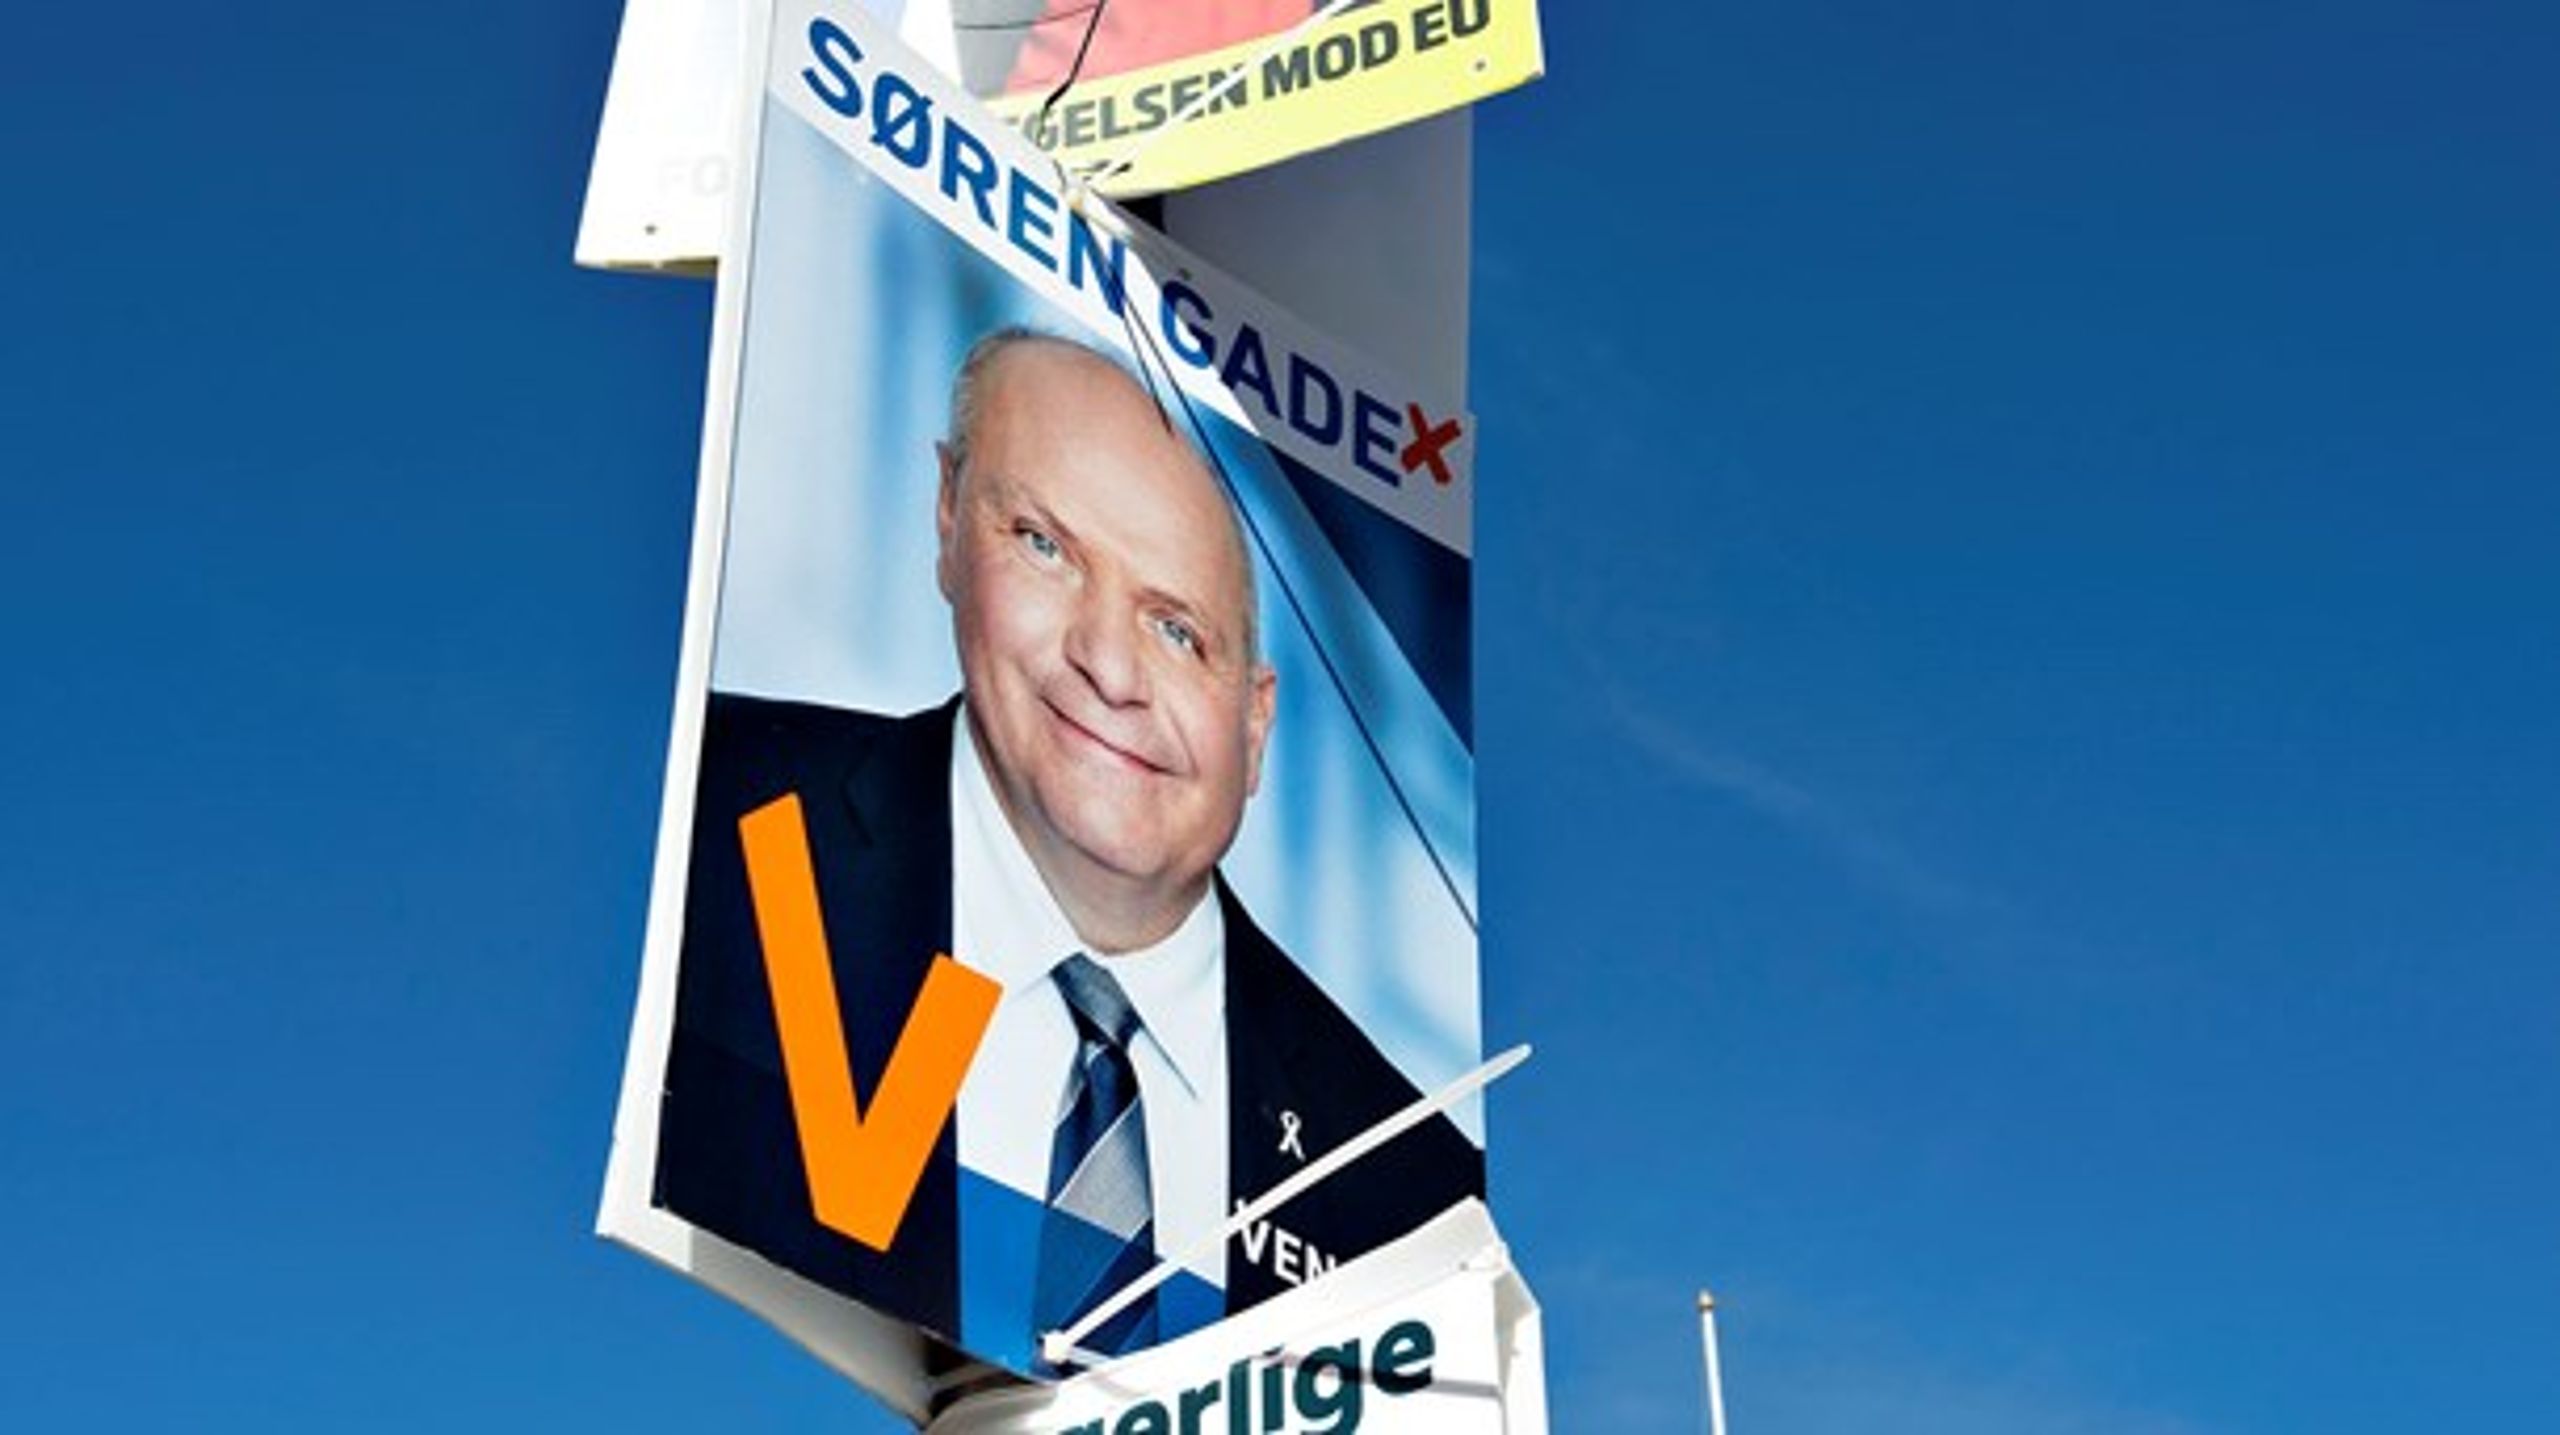 Søren Gade mener ikke, at EU skal have et tættere forsvarssamarbejde eller gå med i EU's bankunion. Men det mener spidskandidat Morten Løkkegaard.